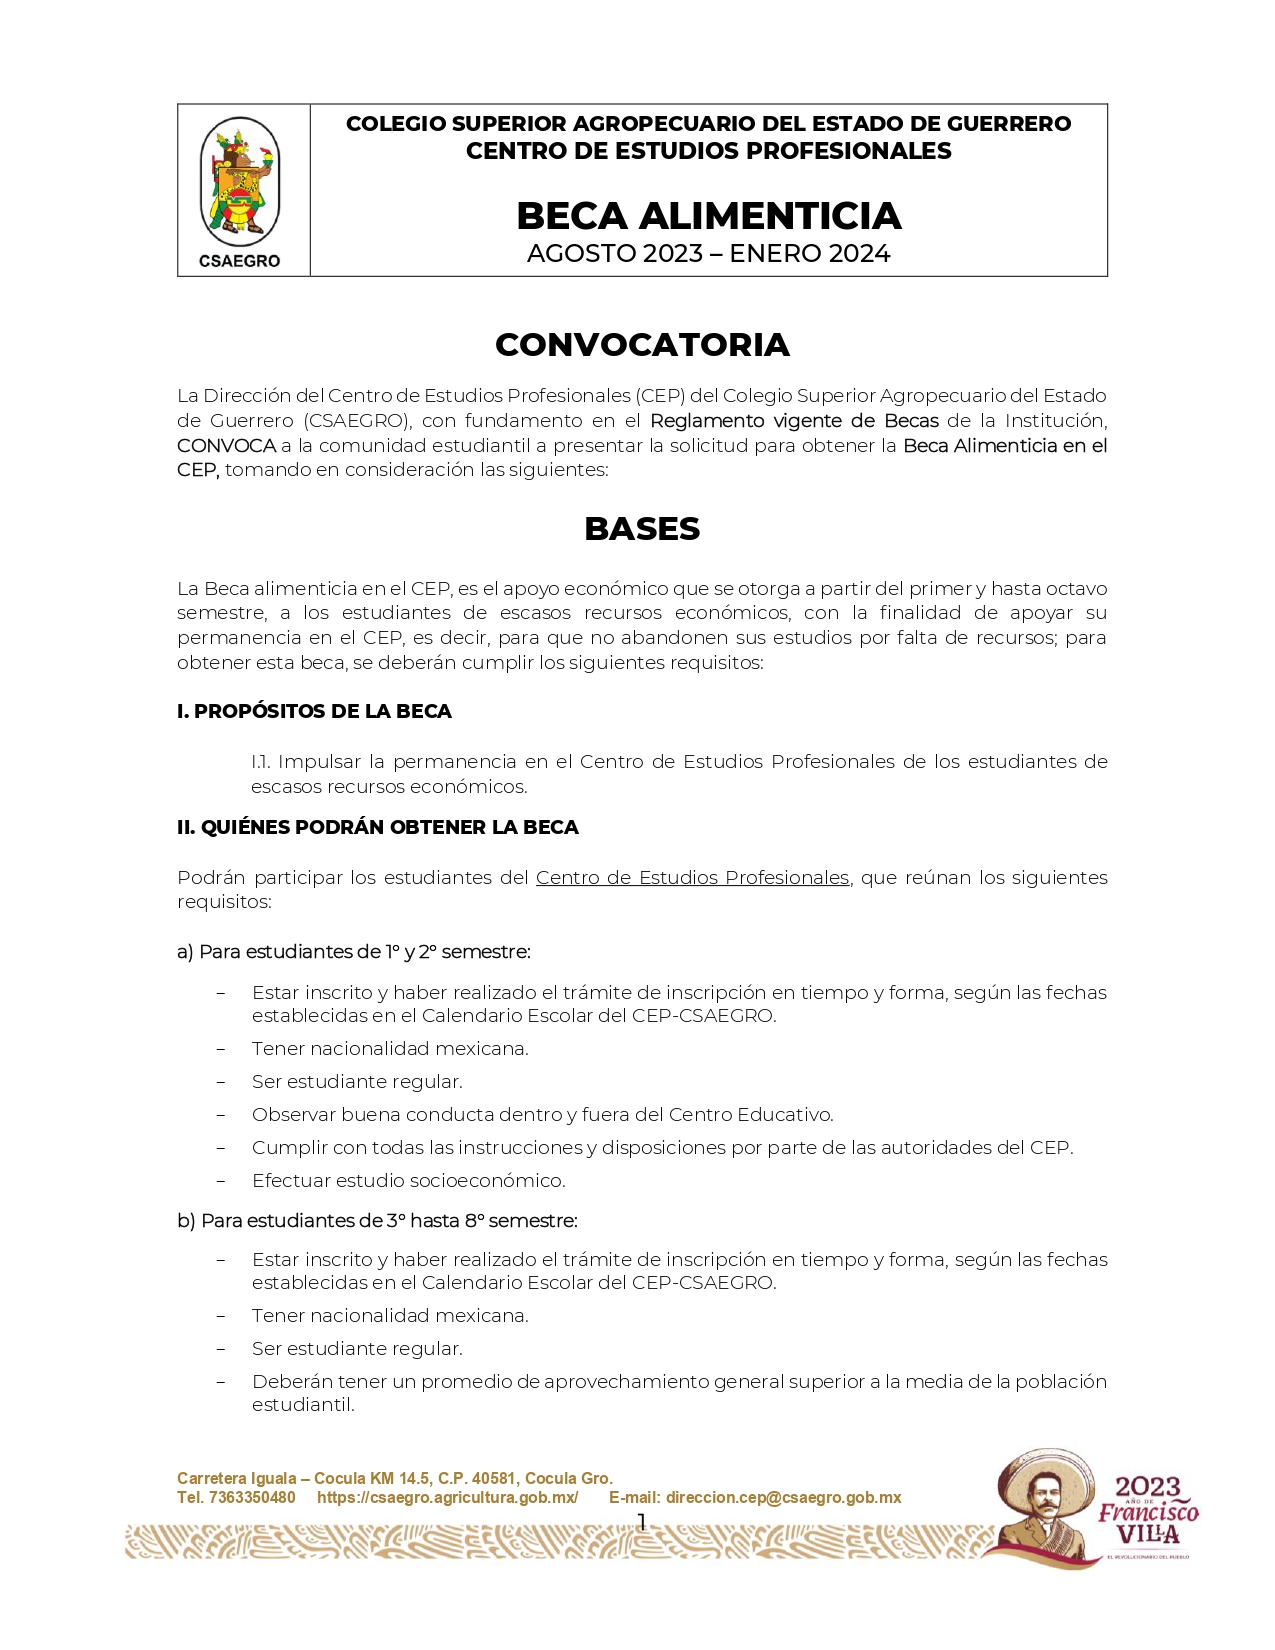 CONVOCATORIA BECA ALIMENTICIA AGO 2023-ENE 2024_page-0001.jpg